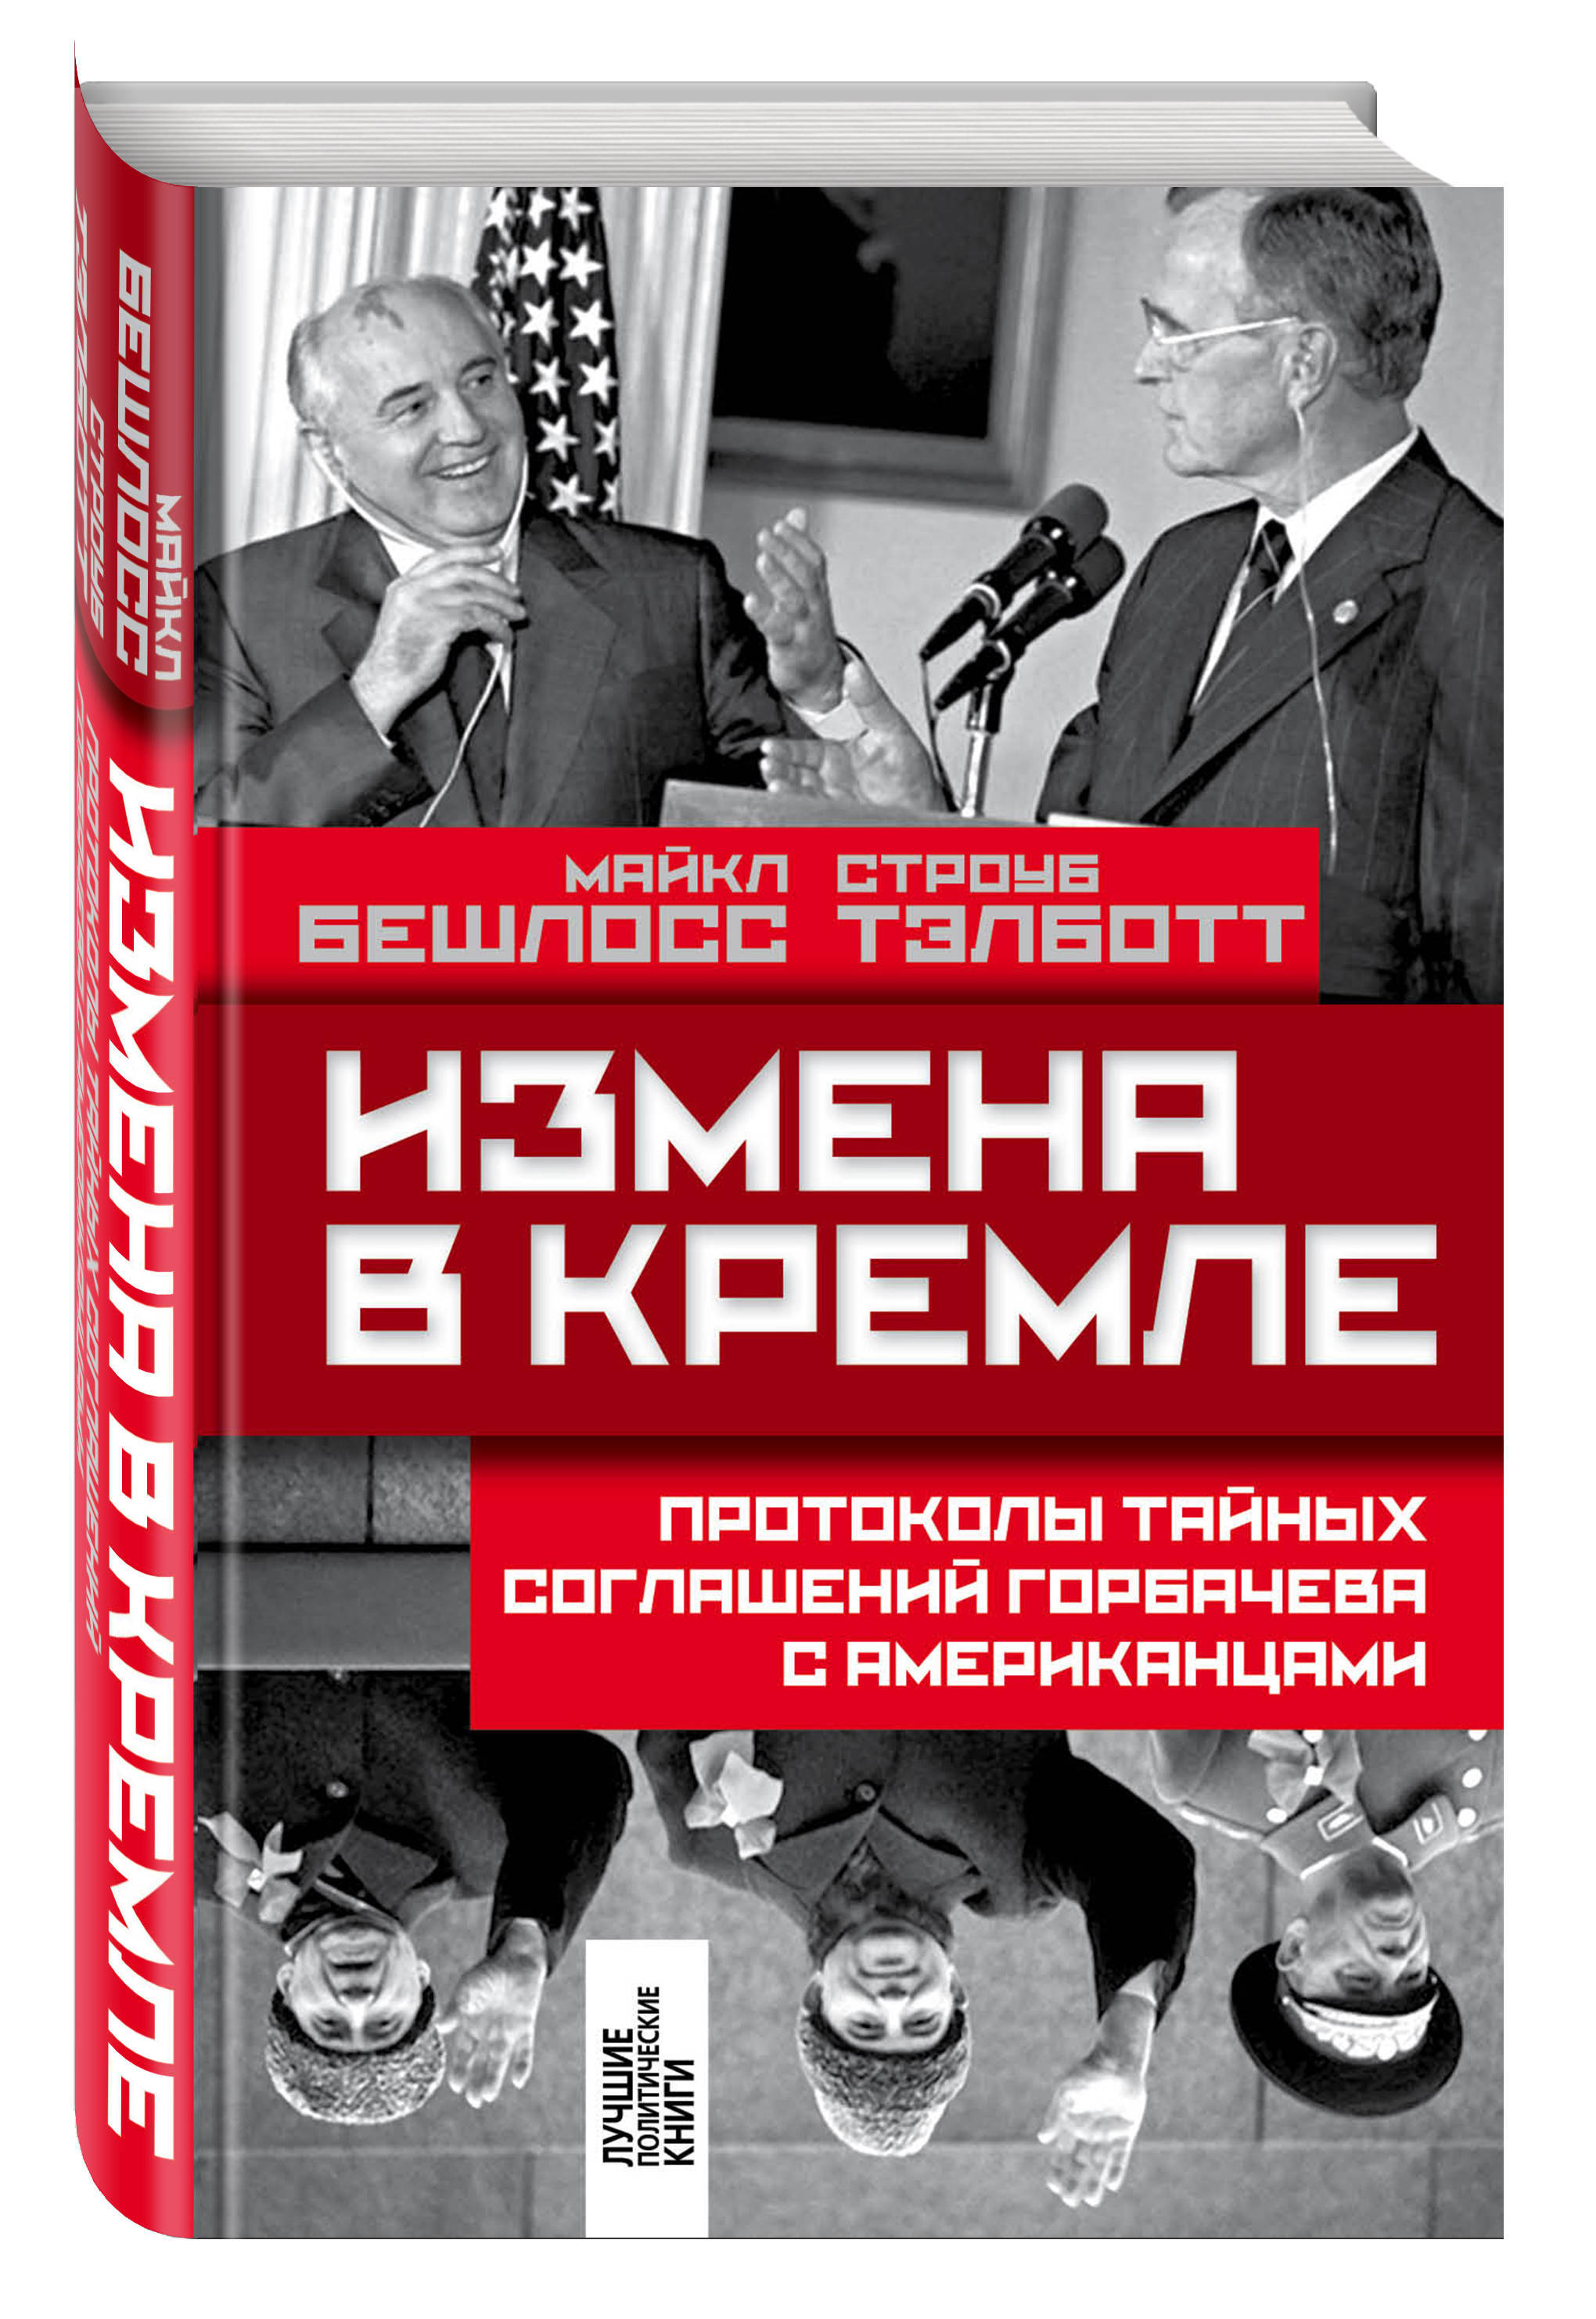 Обложка книги Бешлосс Майкл, Тэлботт Строуб: Измена в Кремле: Протоколы тайных соглашений Горбачева с американцами